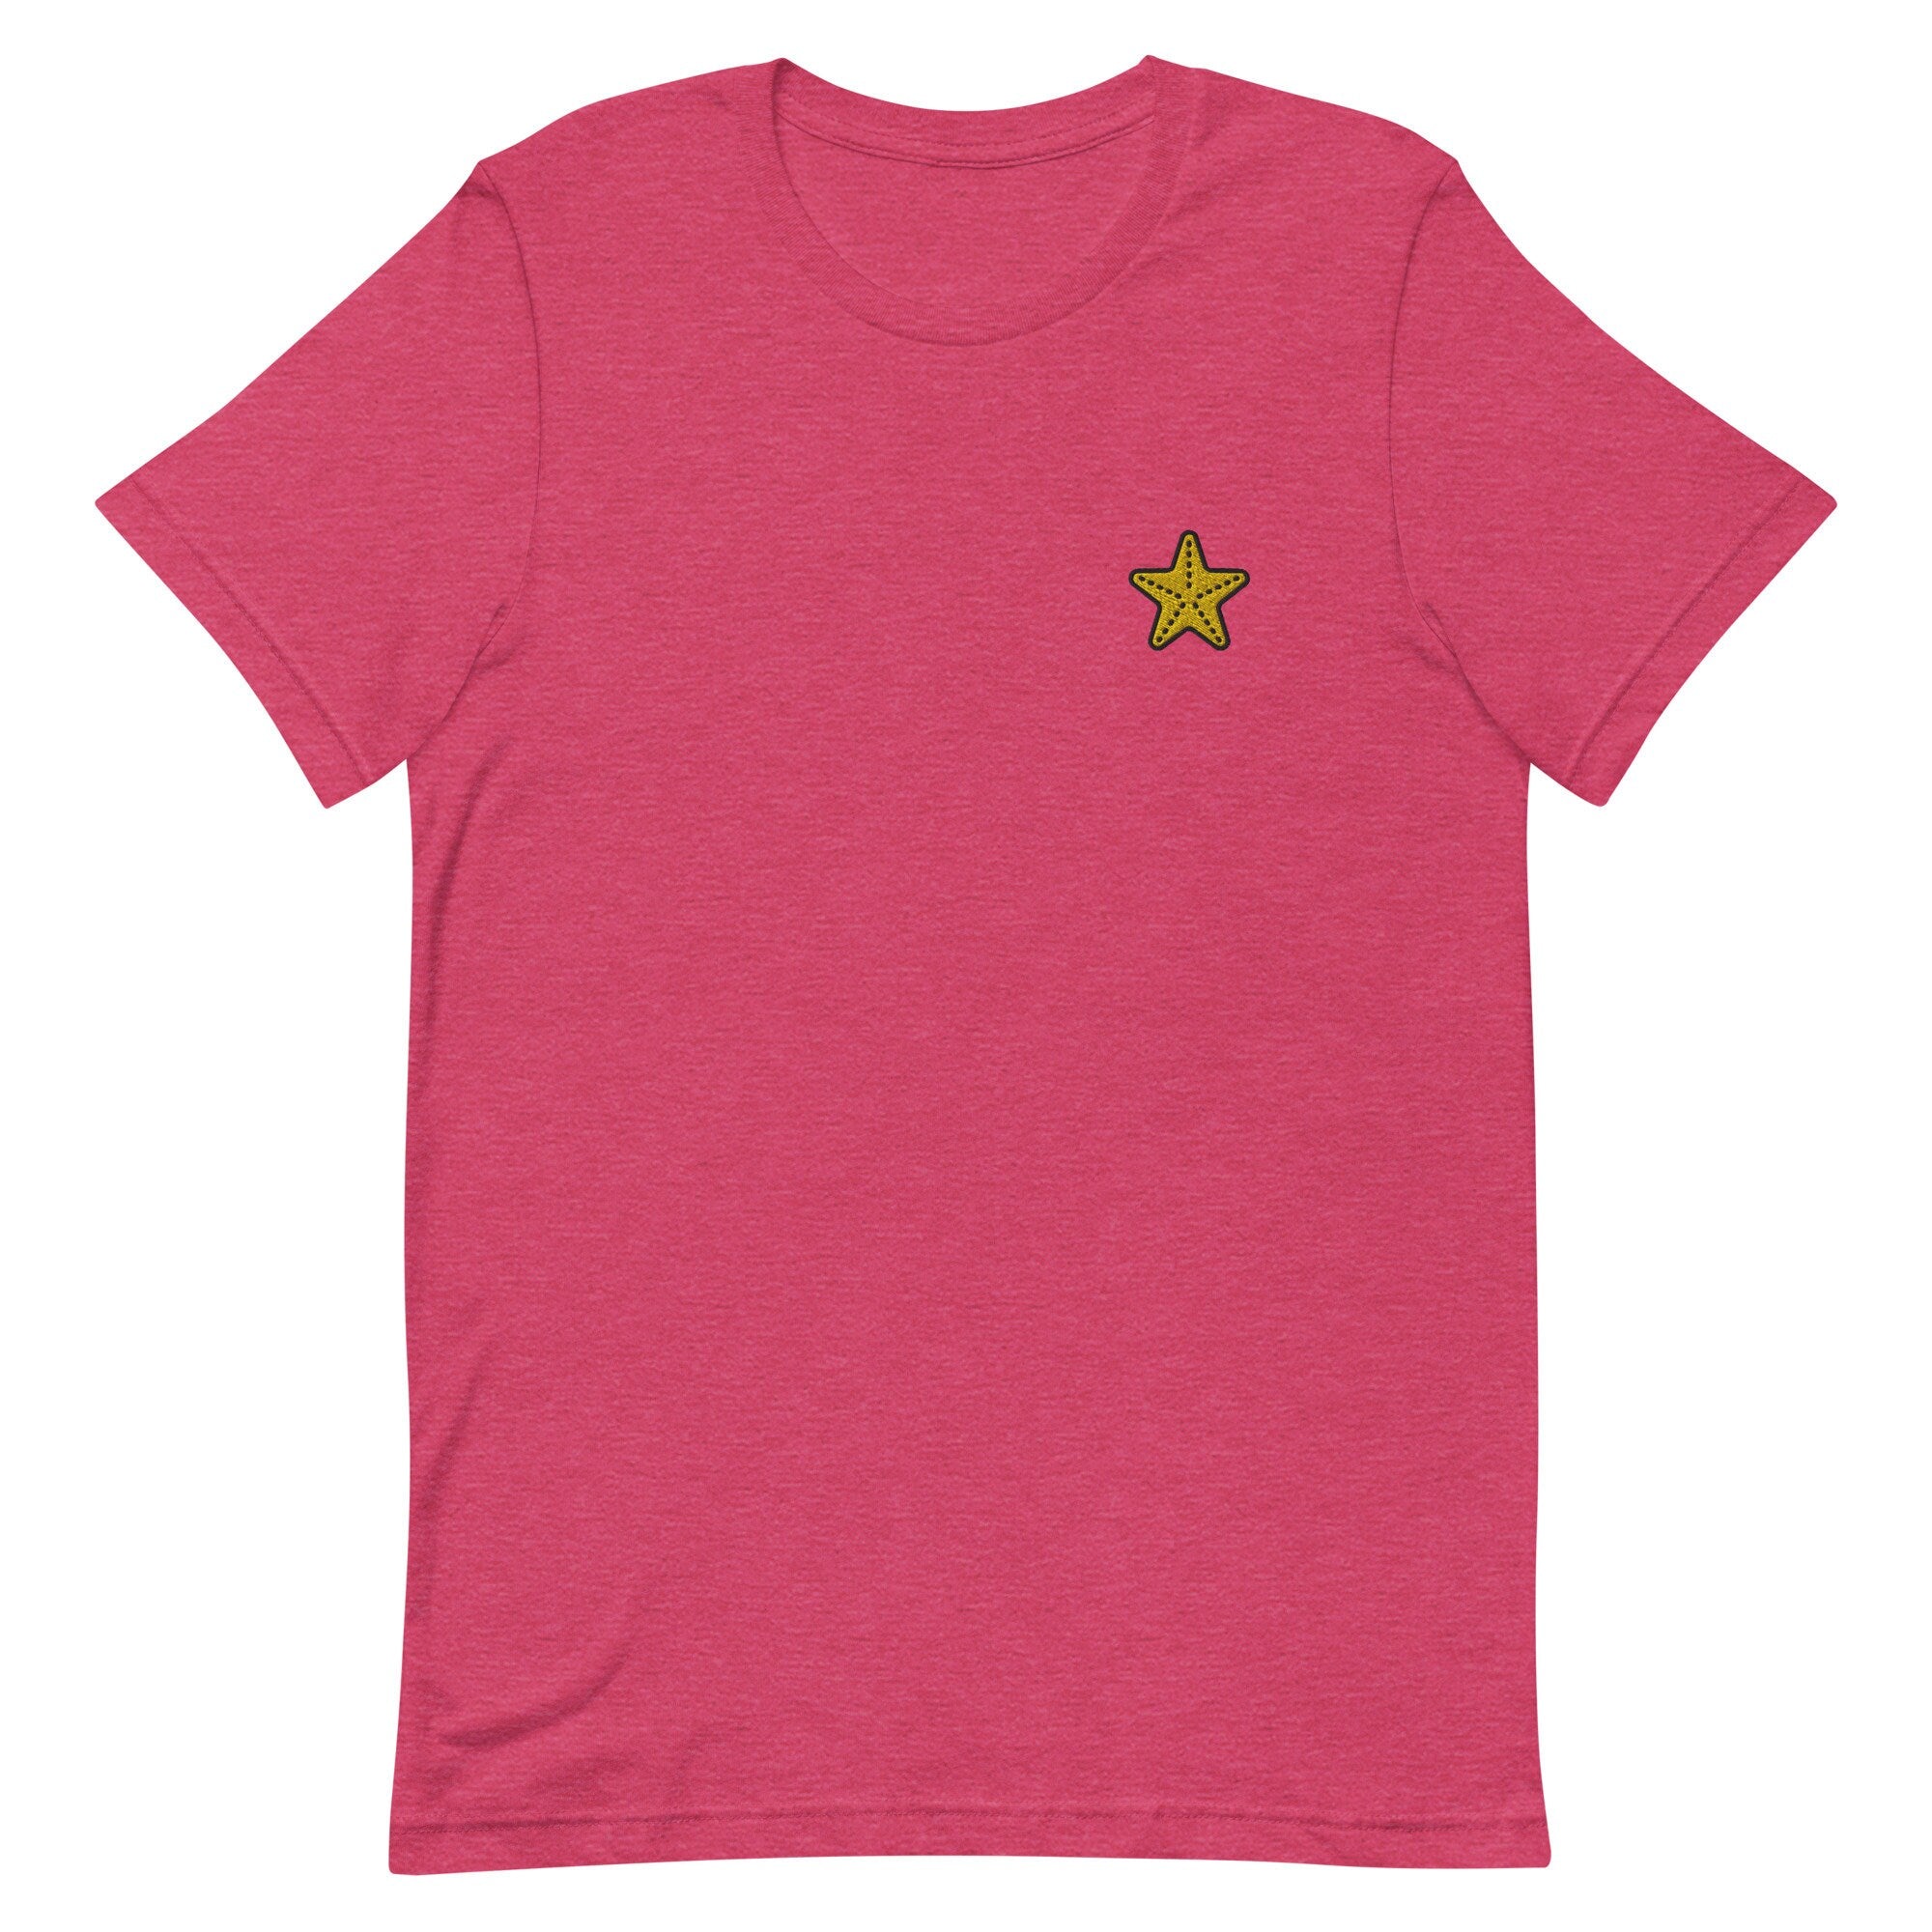 Starfish Premium Men's T-Shirt, Embroidered Men's T-Shirt Gift for Boyfriend, Men's Short Sleeve Shirt - Multiple Colors